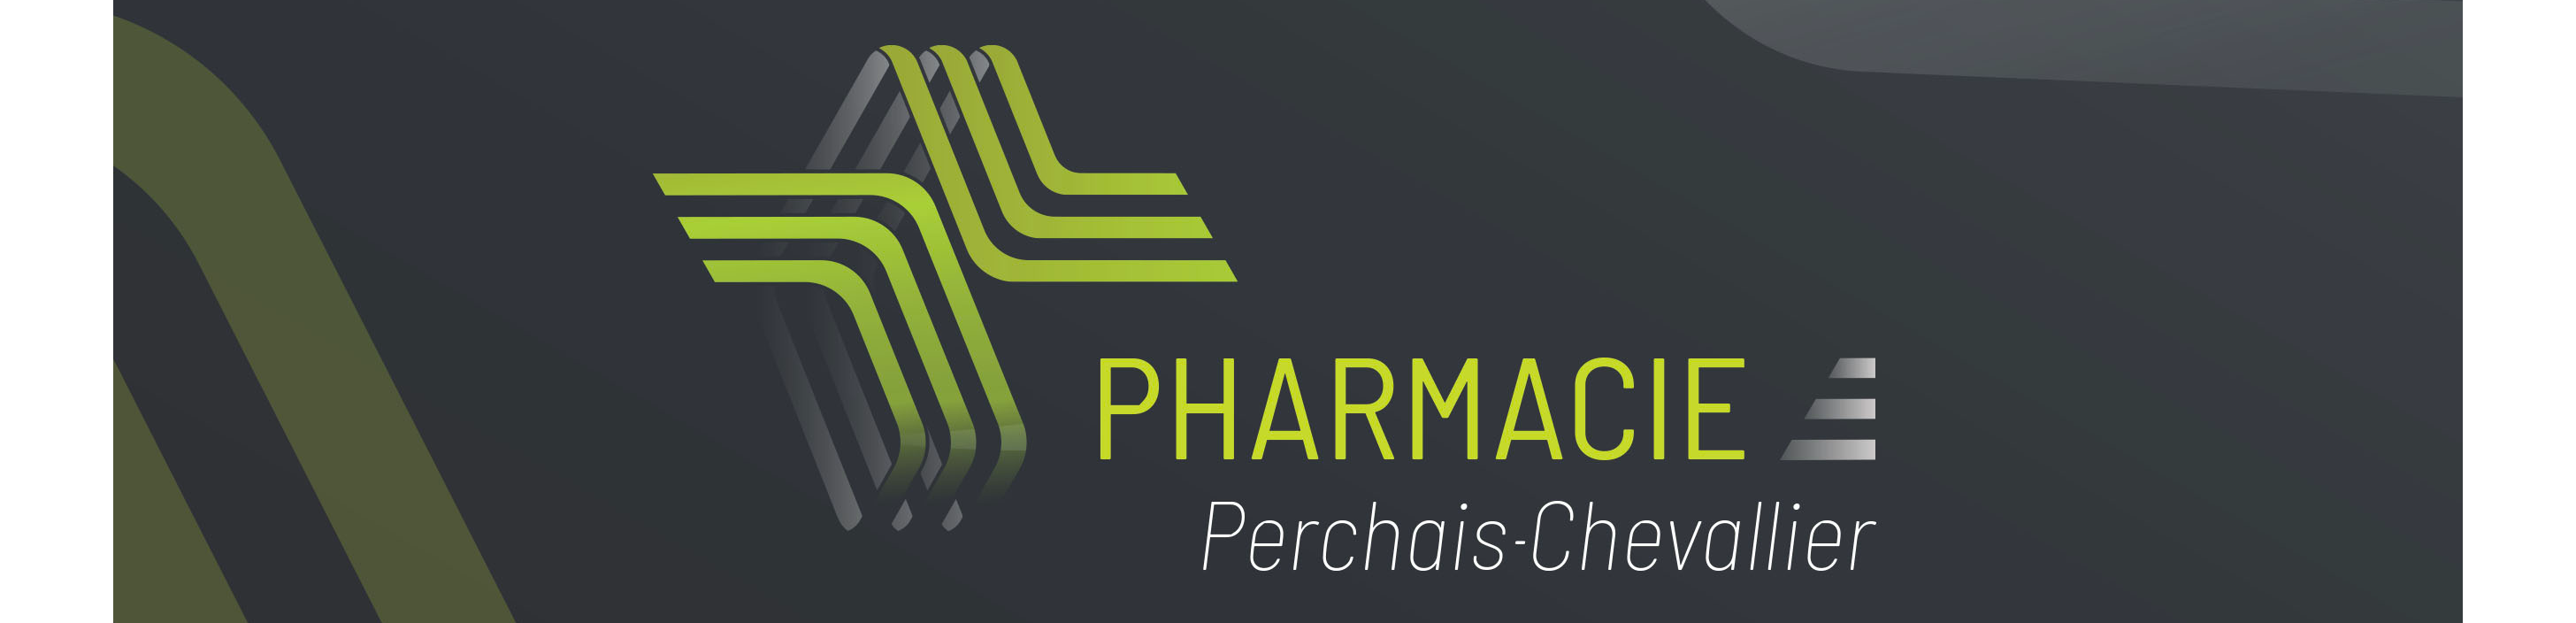 Pharmacie Perchais Chevallier logo